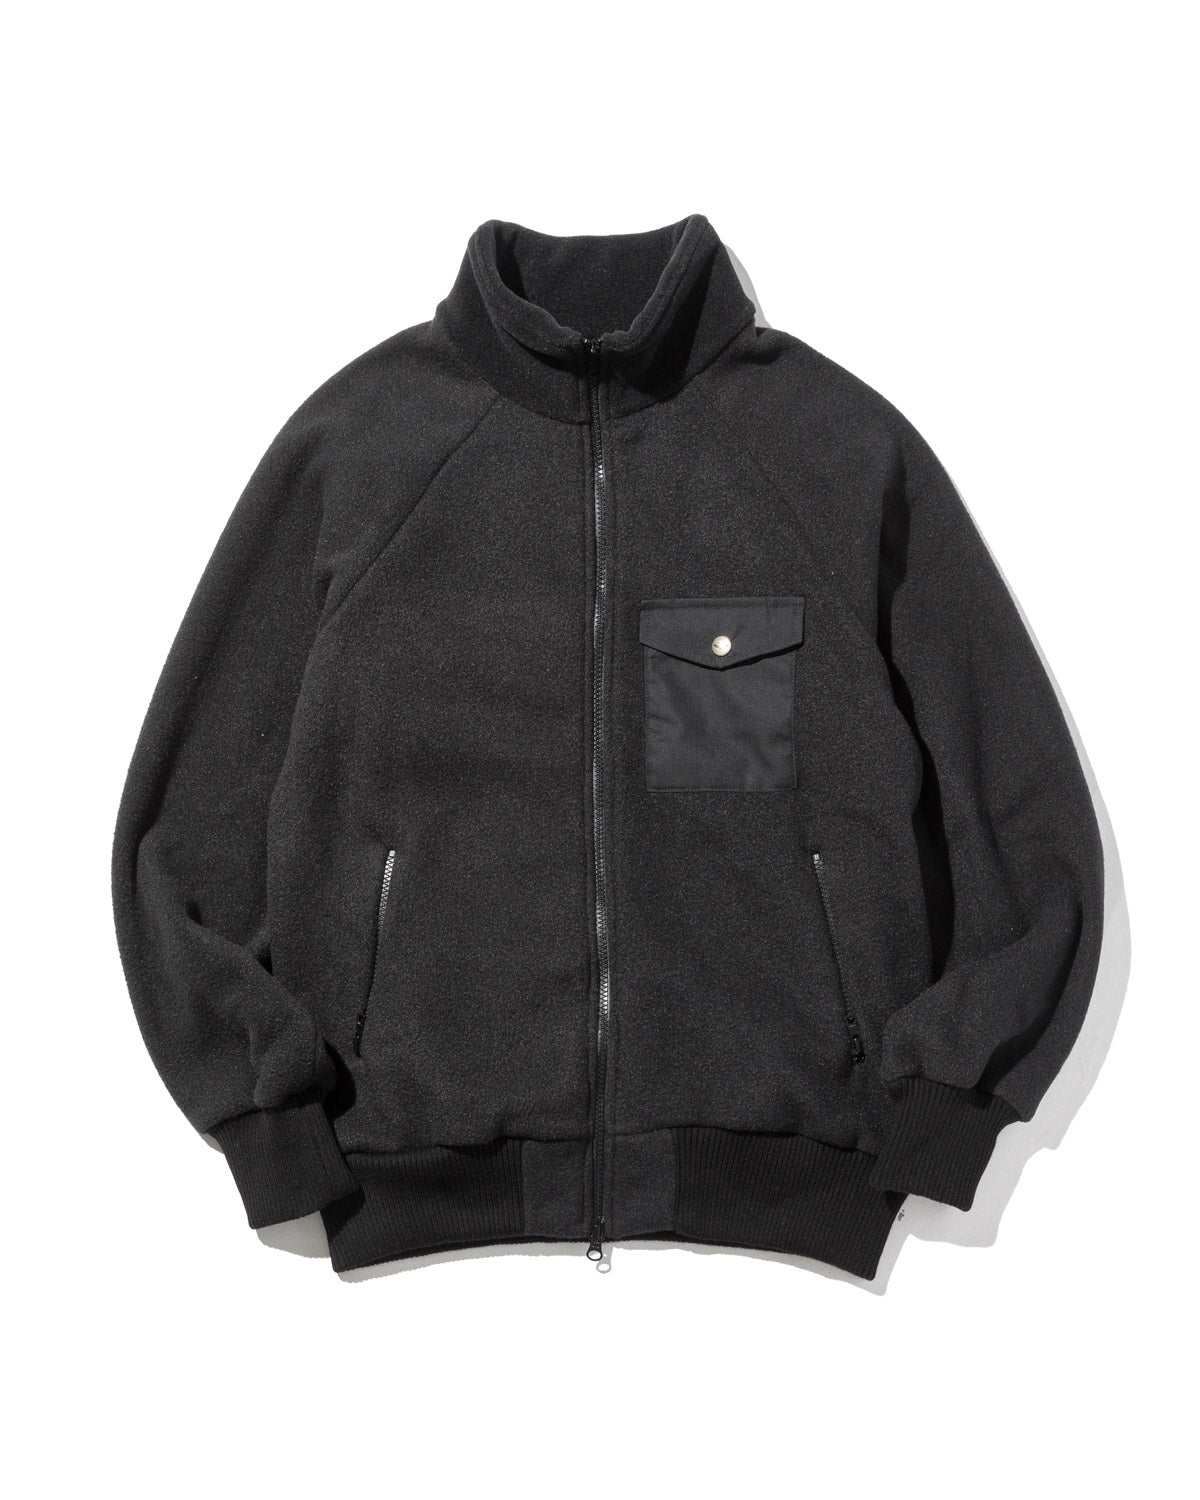 Warm-Up Fleece / Black – Battenwear